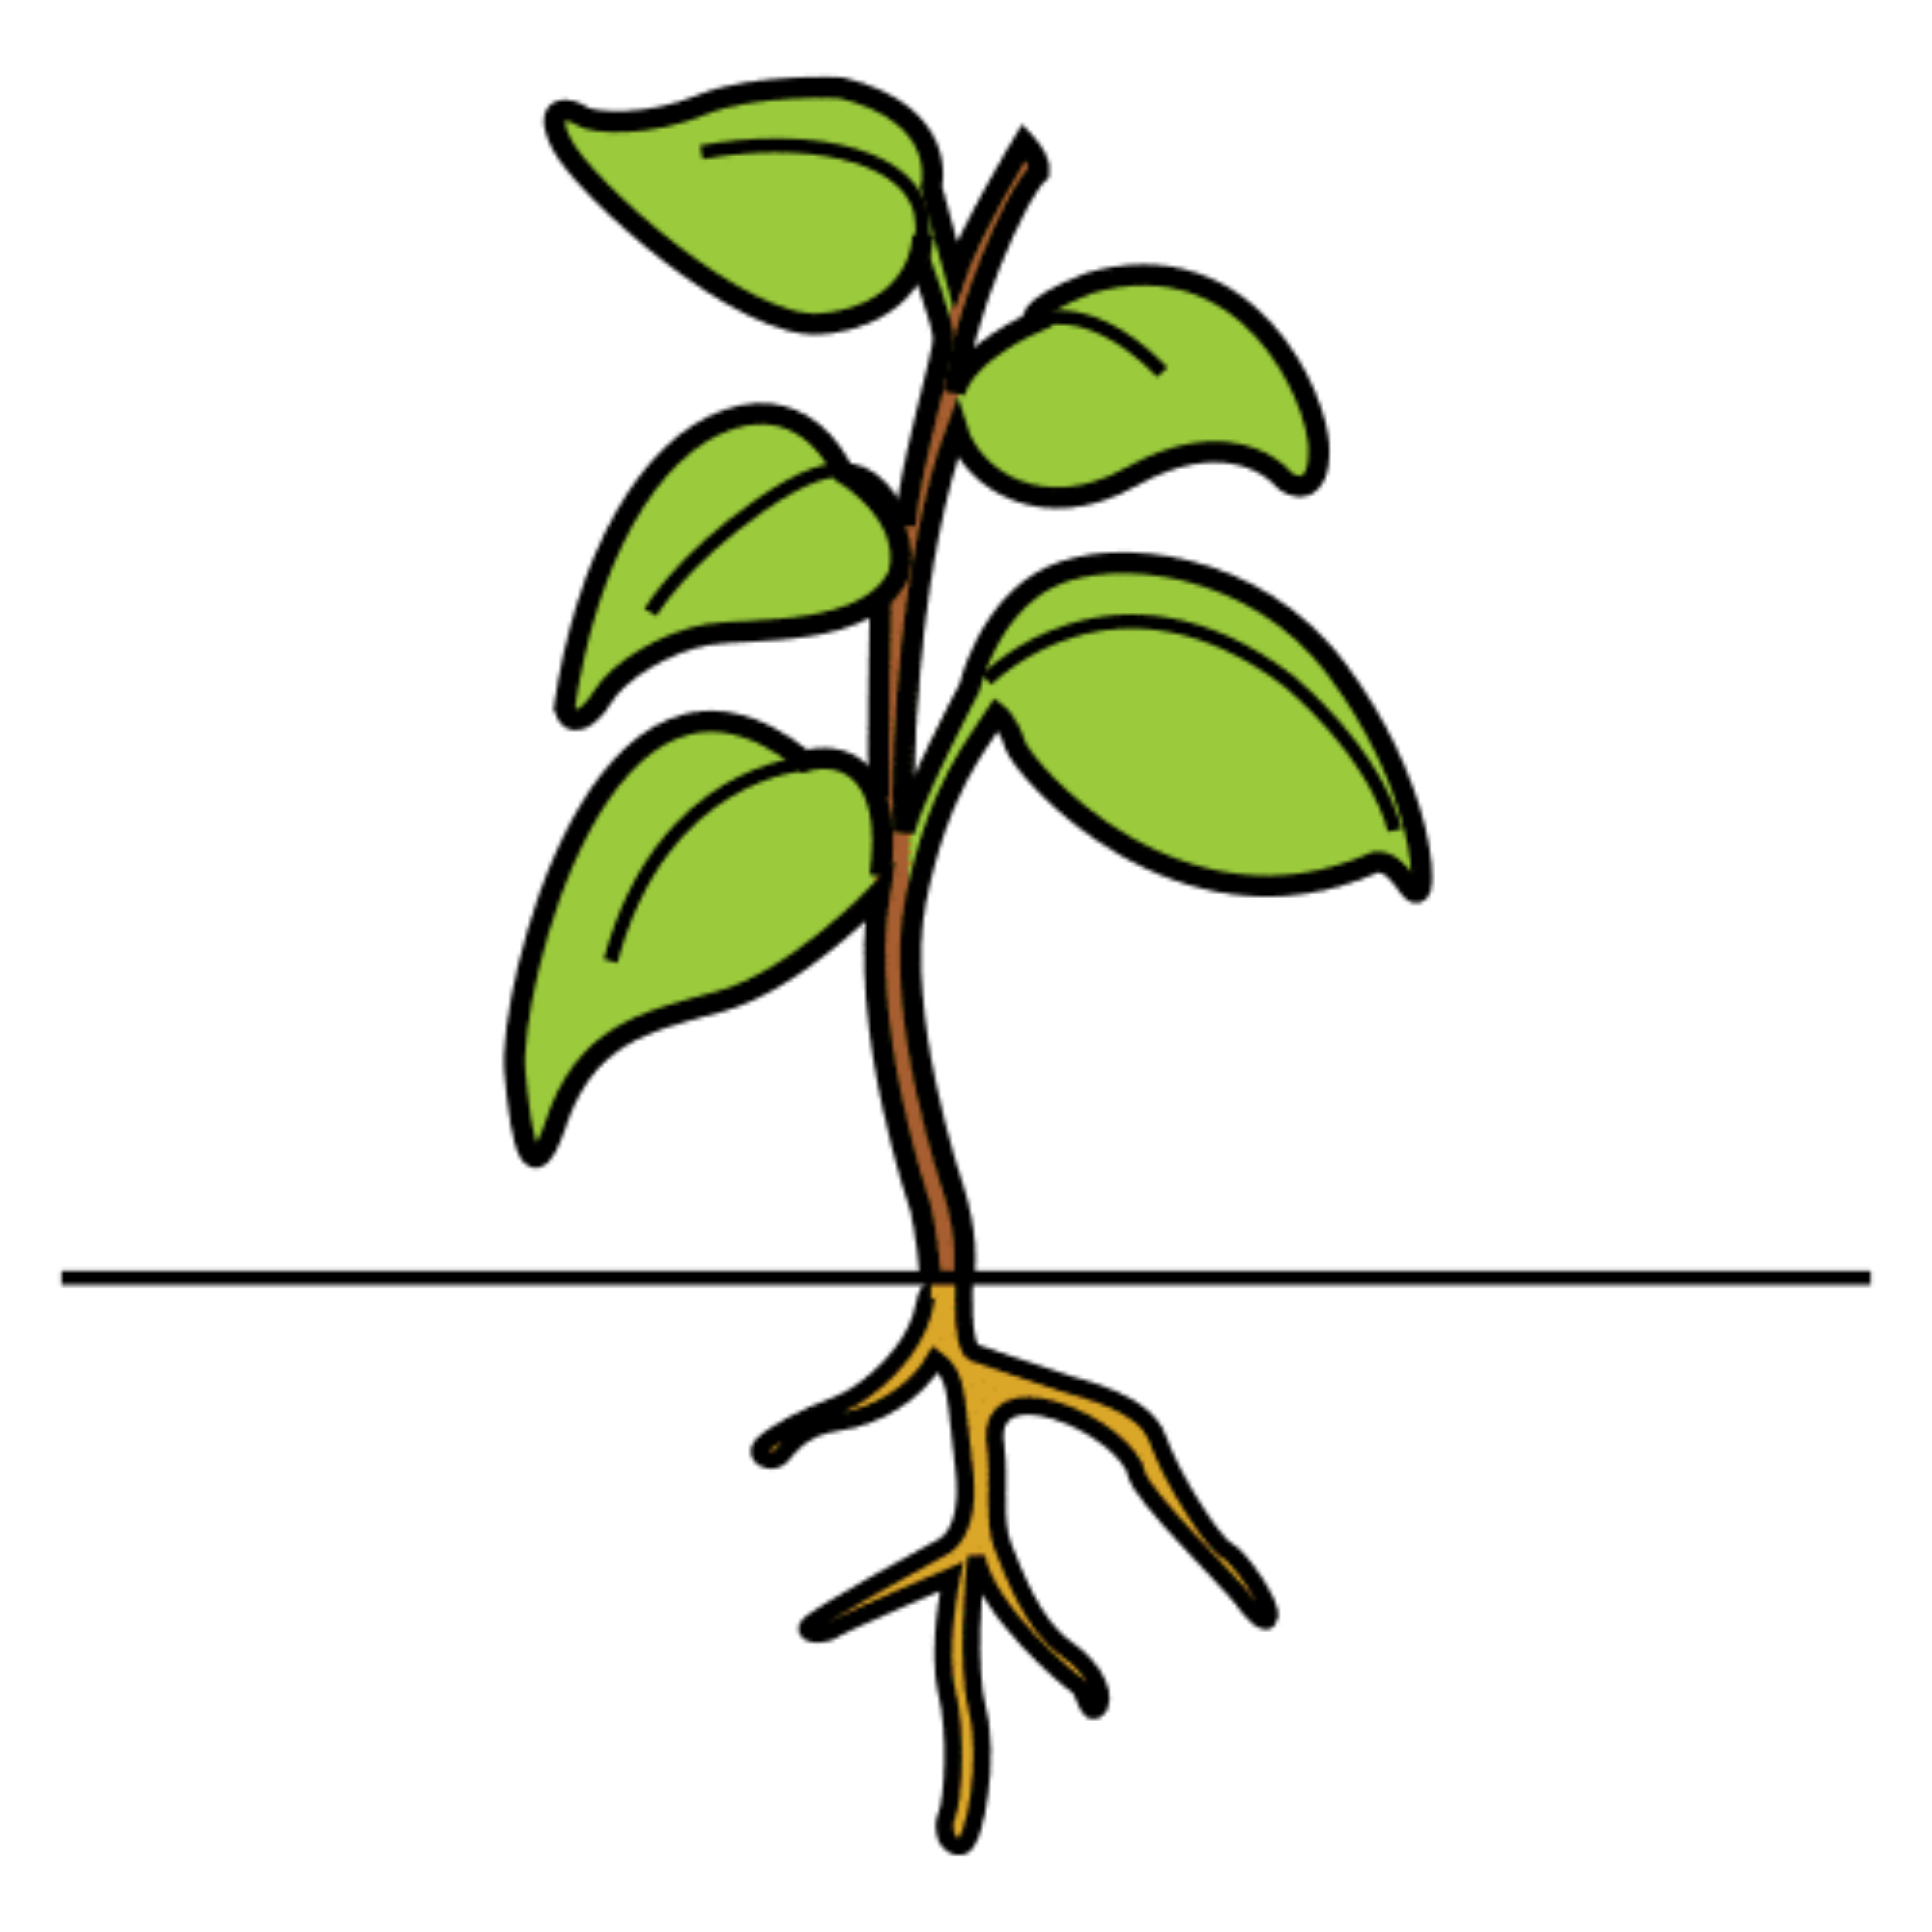 La imagen muestra una planta